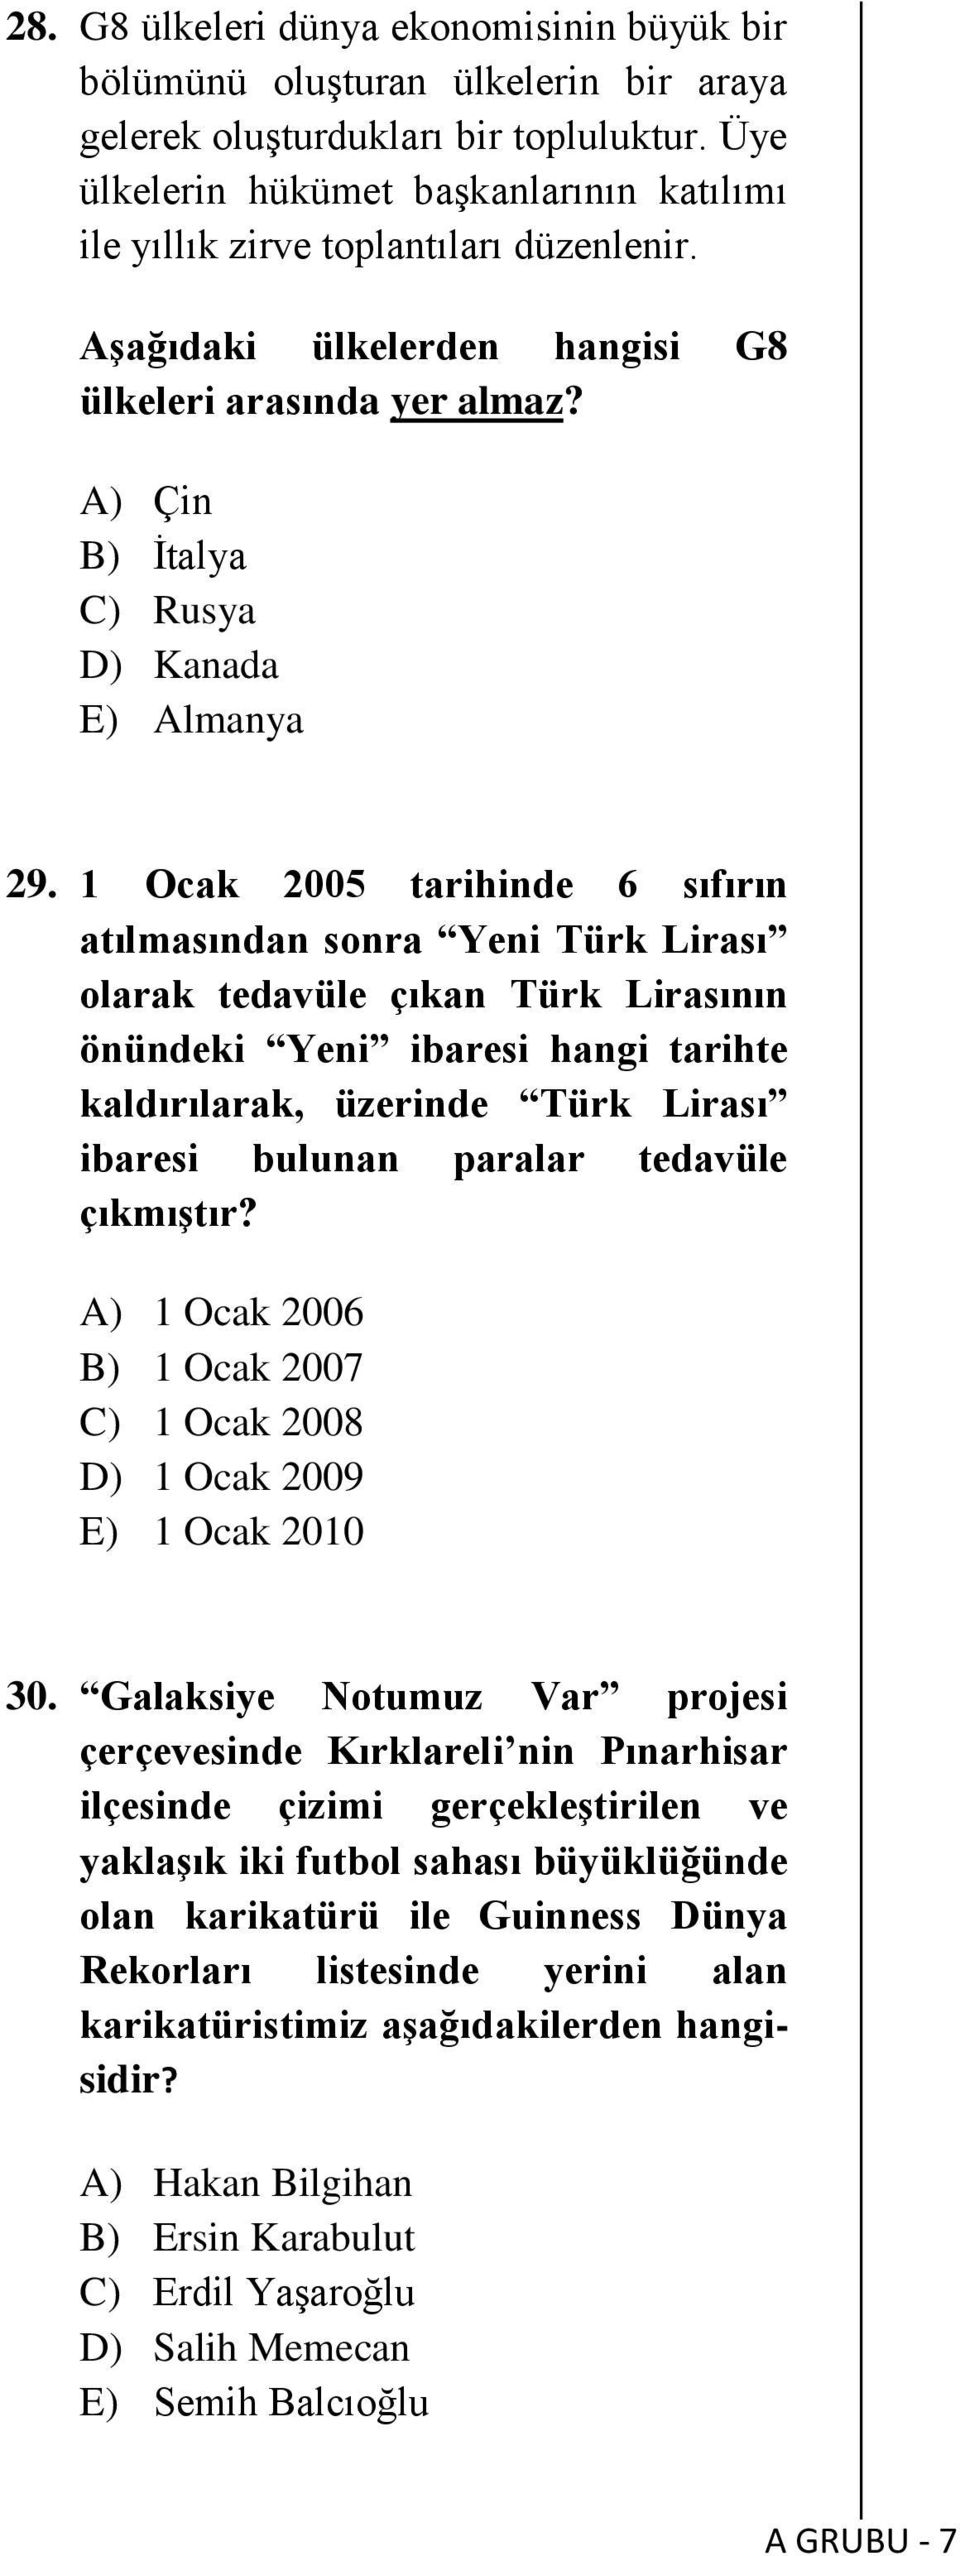 1 Ocak 2005 tarihinde 6 sıfırın atılmasından sonra Yeni Türk Lirası olarak tedavüle çıkan Türk Lirasının önündeki Yeni ibaresi hangi tarihte kaldırılarak, üzerinde Türk Lirası ibaresi bulunan paralar